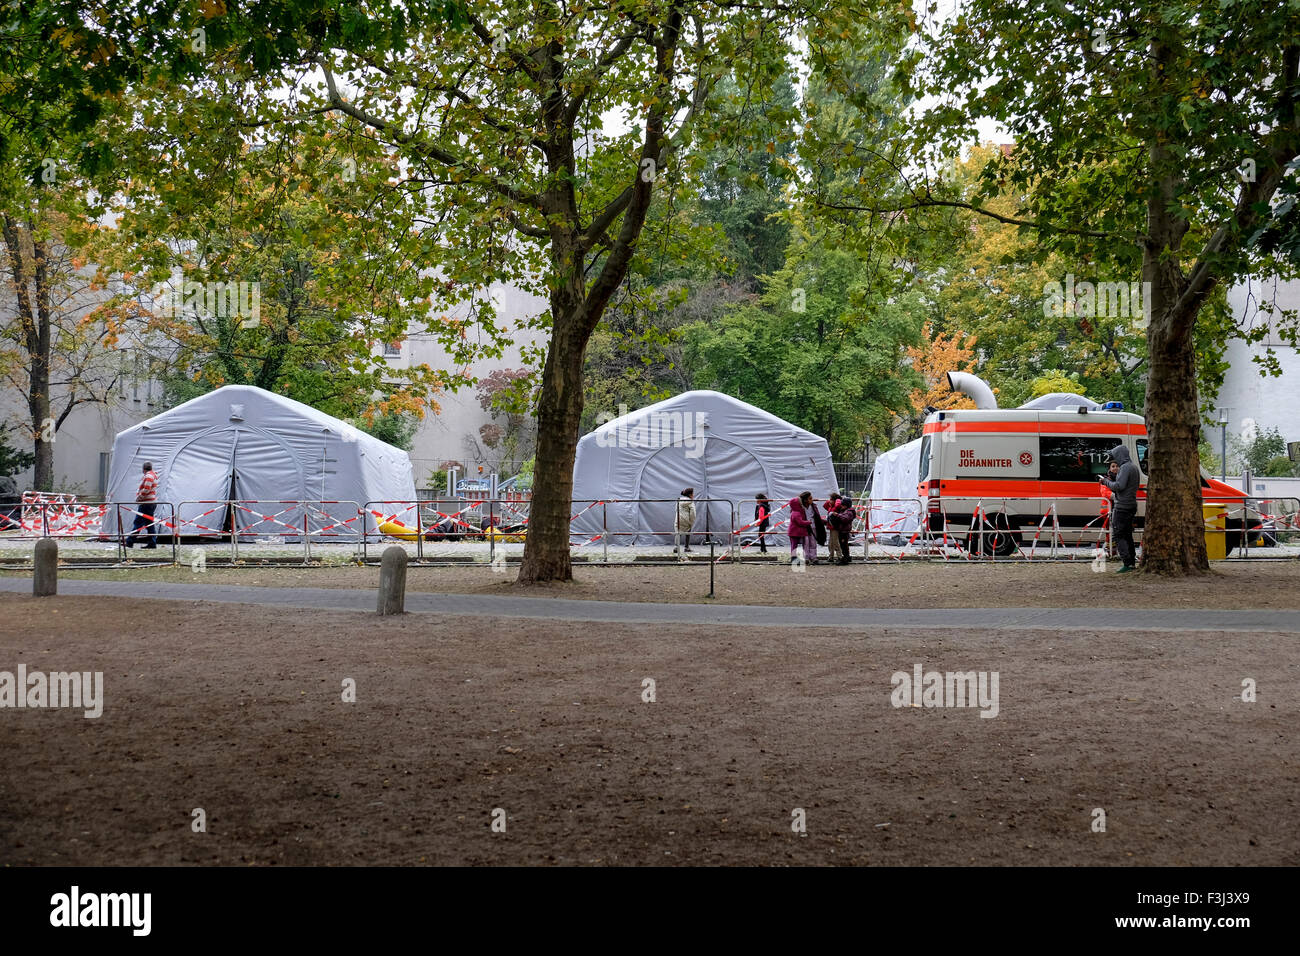 Berlin, Deutschland, 7. Oktober 2014. Berlin begrüßt Flüchtlinge jedoch die Stadt kämpft, um die Massen zu verarbeiten, die im Zentrum LaGeSo (Forschungsdefizite Für Gesundheit Und Landeserziehungsgeld) jeden Tag eintreffen. Müde Reisende kämpfen für Interview Zahlen und warten Sie, bis ihre Zahl angezeigt werden. Die wenigen glücklichen durch das Zentrum schnell aber viele ertragen Verzögerungen von Tagen oder Wochen. Kleine Zelte sprießen, decken verteilen und Kinder packen ihre kargen Besitztümer. Beamten und Freiwilligen sind lange Arbeitszeiten zu lindern die Situation und die traurige Ankünfte zu unterstützen. Bildnachweis: Eden Breitz/Alamy Live neu Stockfoto